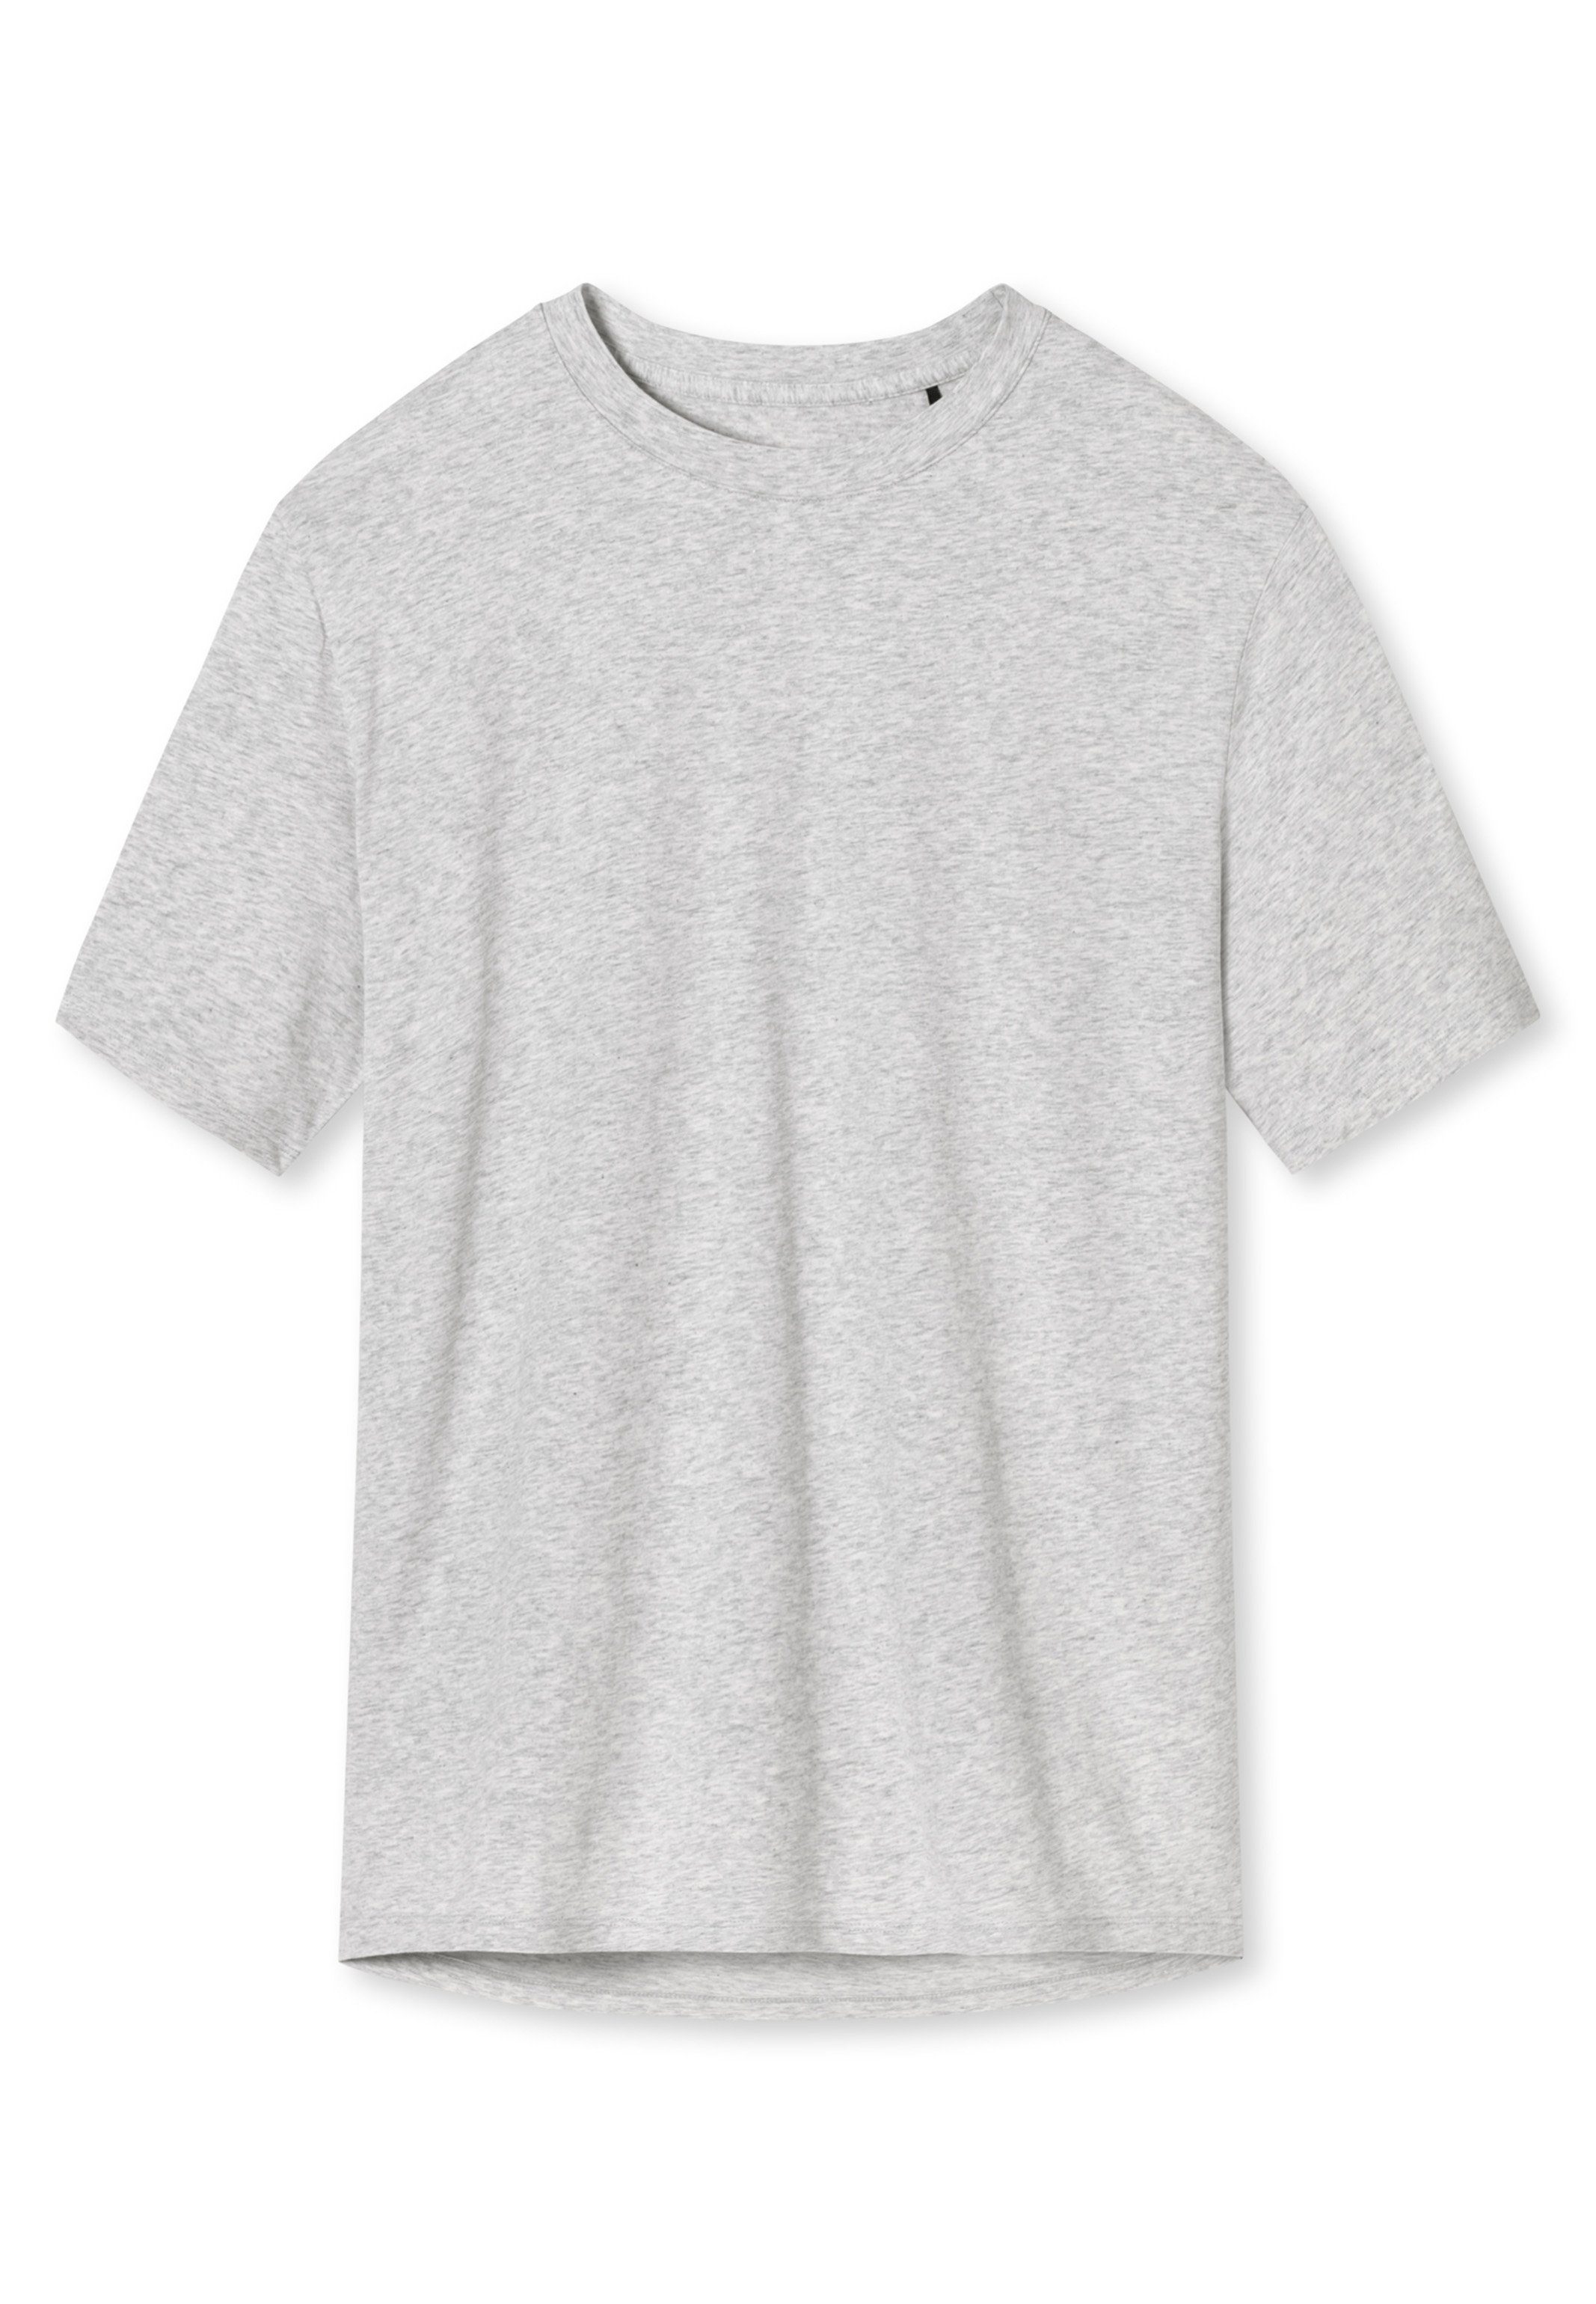 Mix & Grau-Melange Shirt Pyjamaoberteil Schlafanzug Cotton - Schiesser Organic (1-tlg) - kurzarm Baumwolle Relax